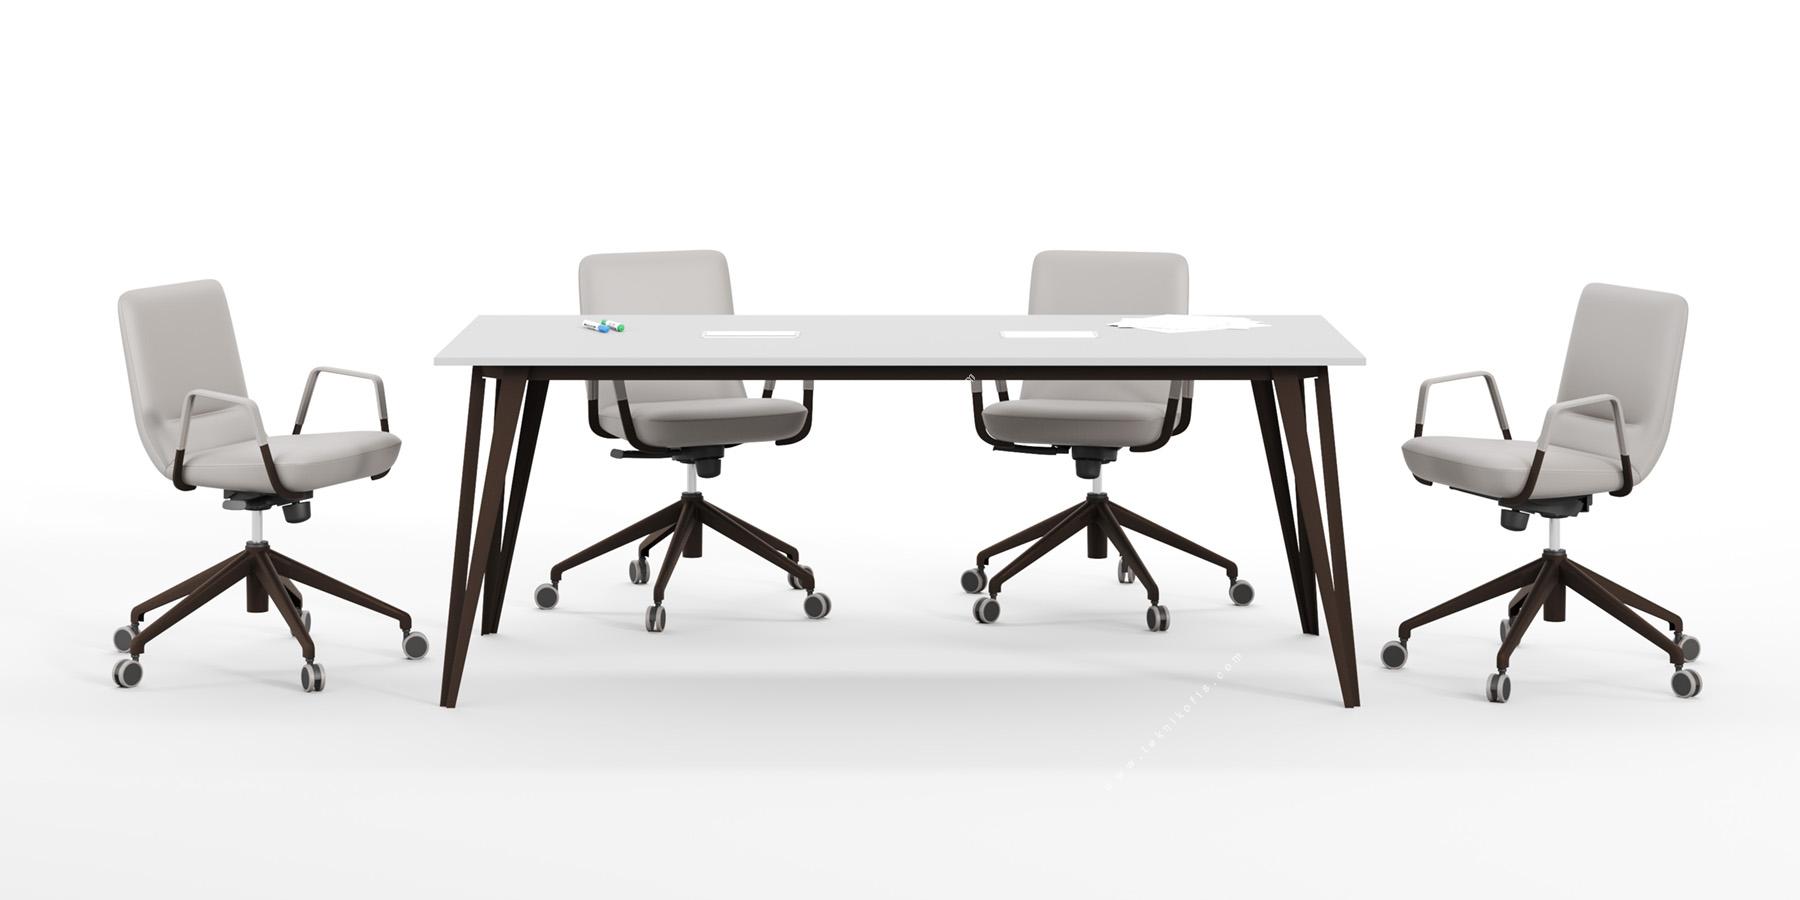 sable şık metal ayaklı dikdörtgen toplantı masası 180cm